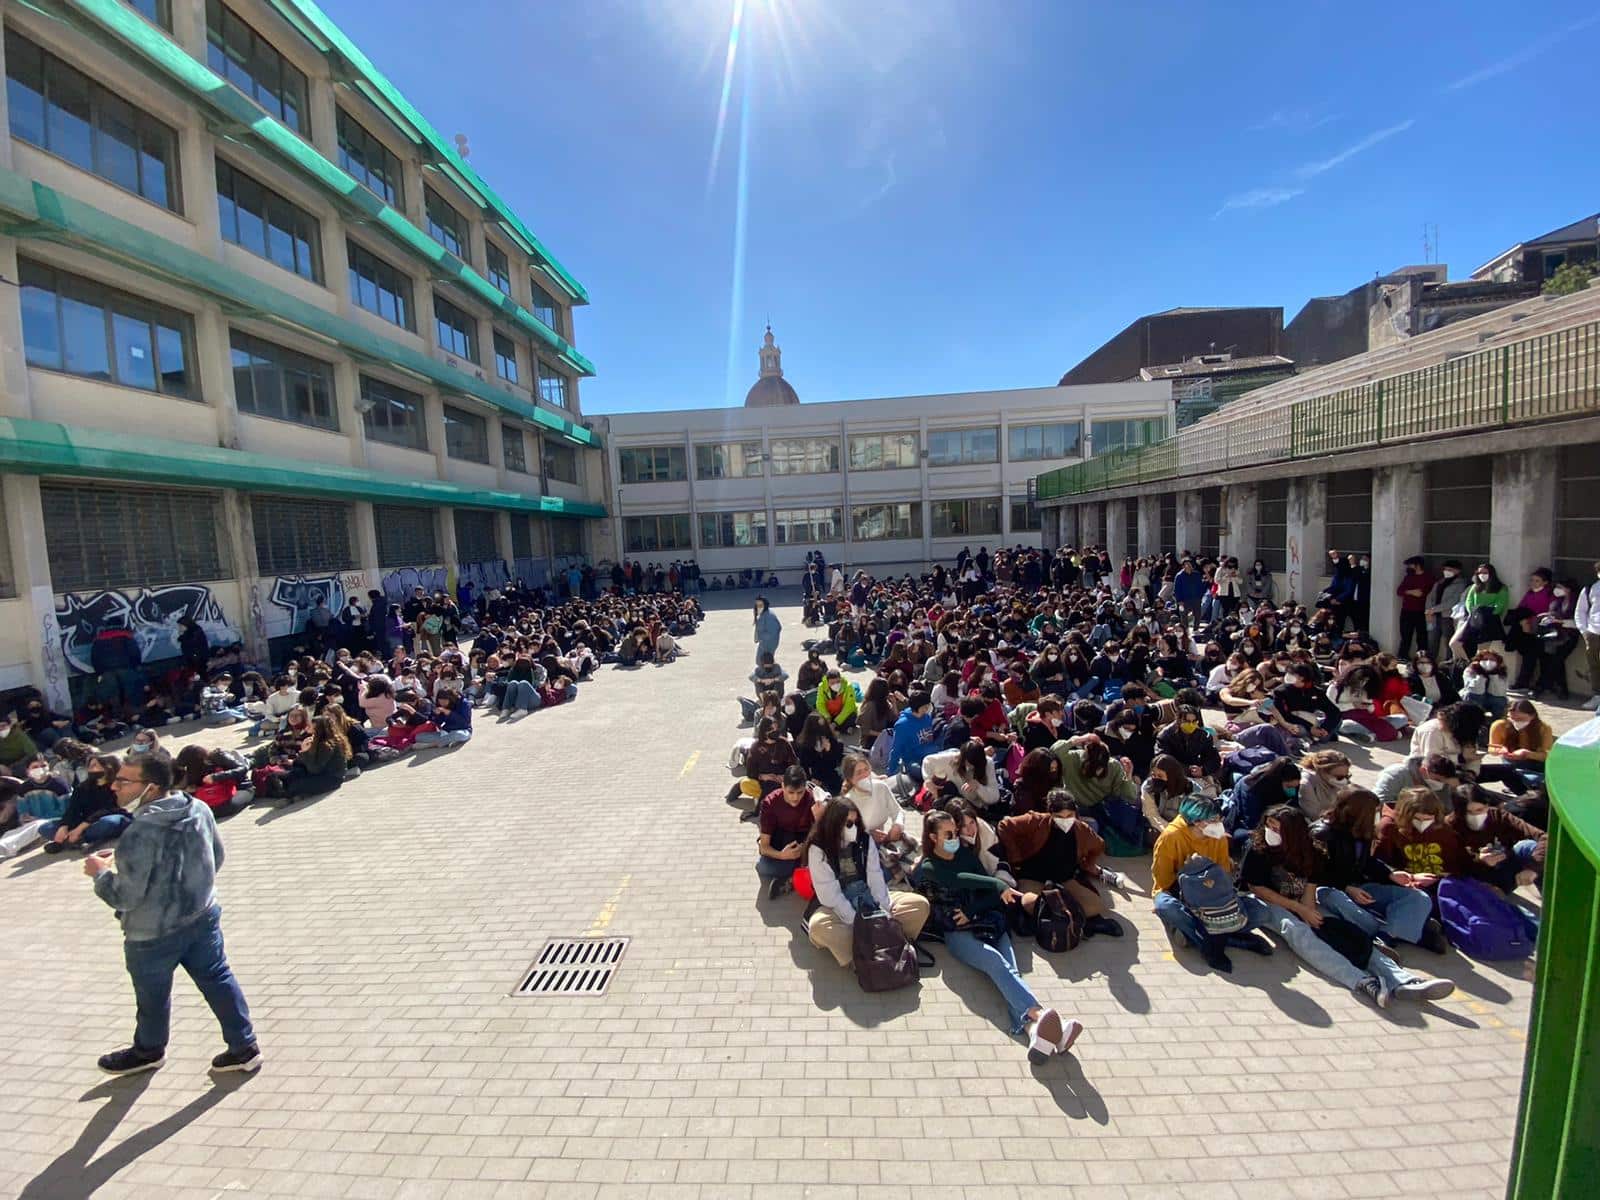 Liceo Spedalieri in cogestione, gli studenti chiedono una scuola “catalizzatrice di rinnovamento” – FOTO